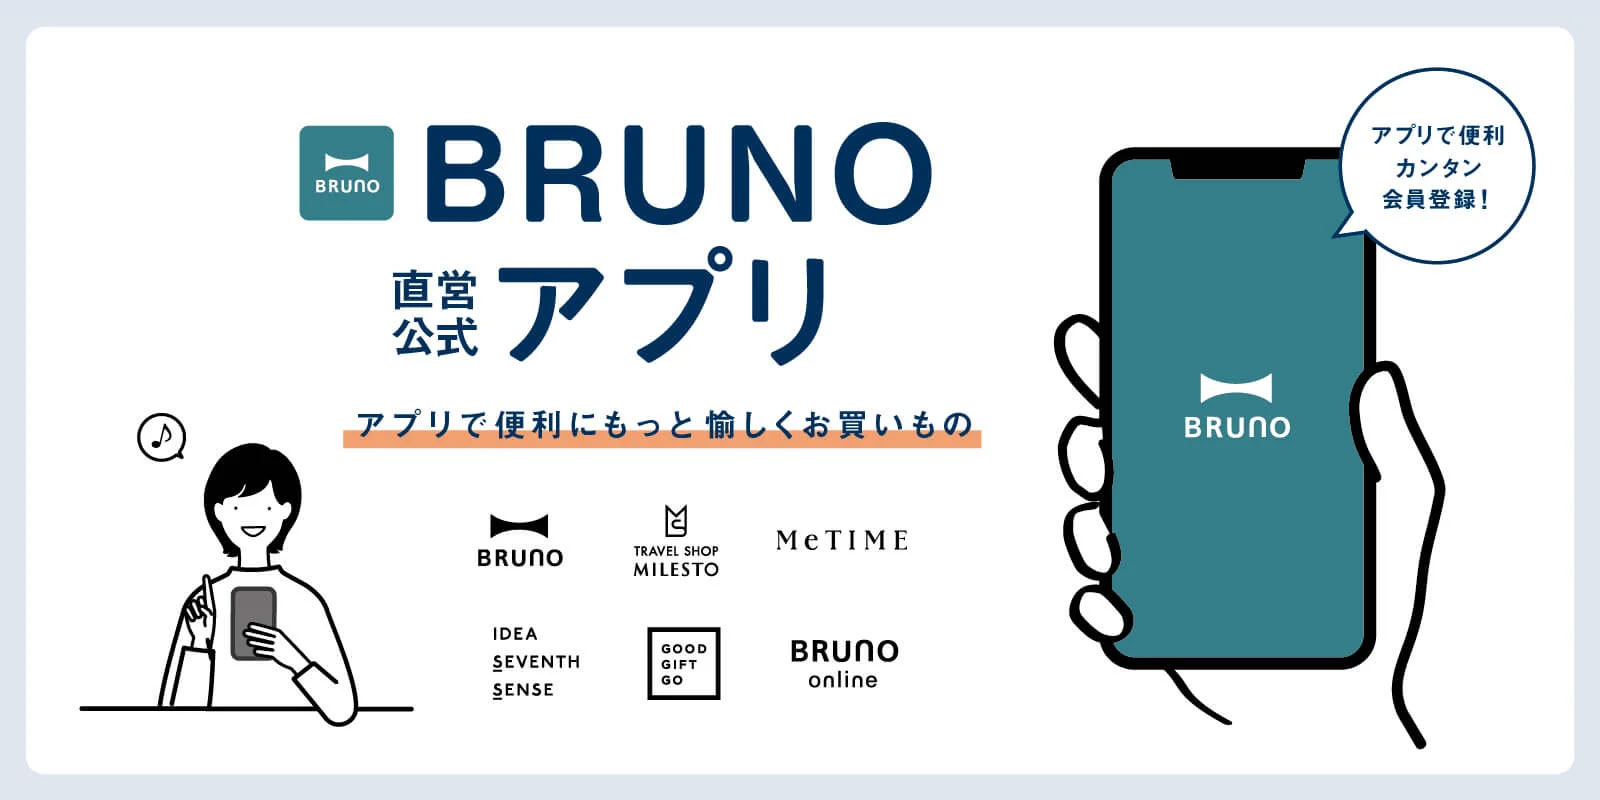 BRUNO直営店公式アプリ